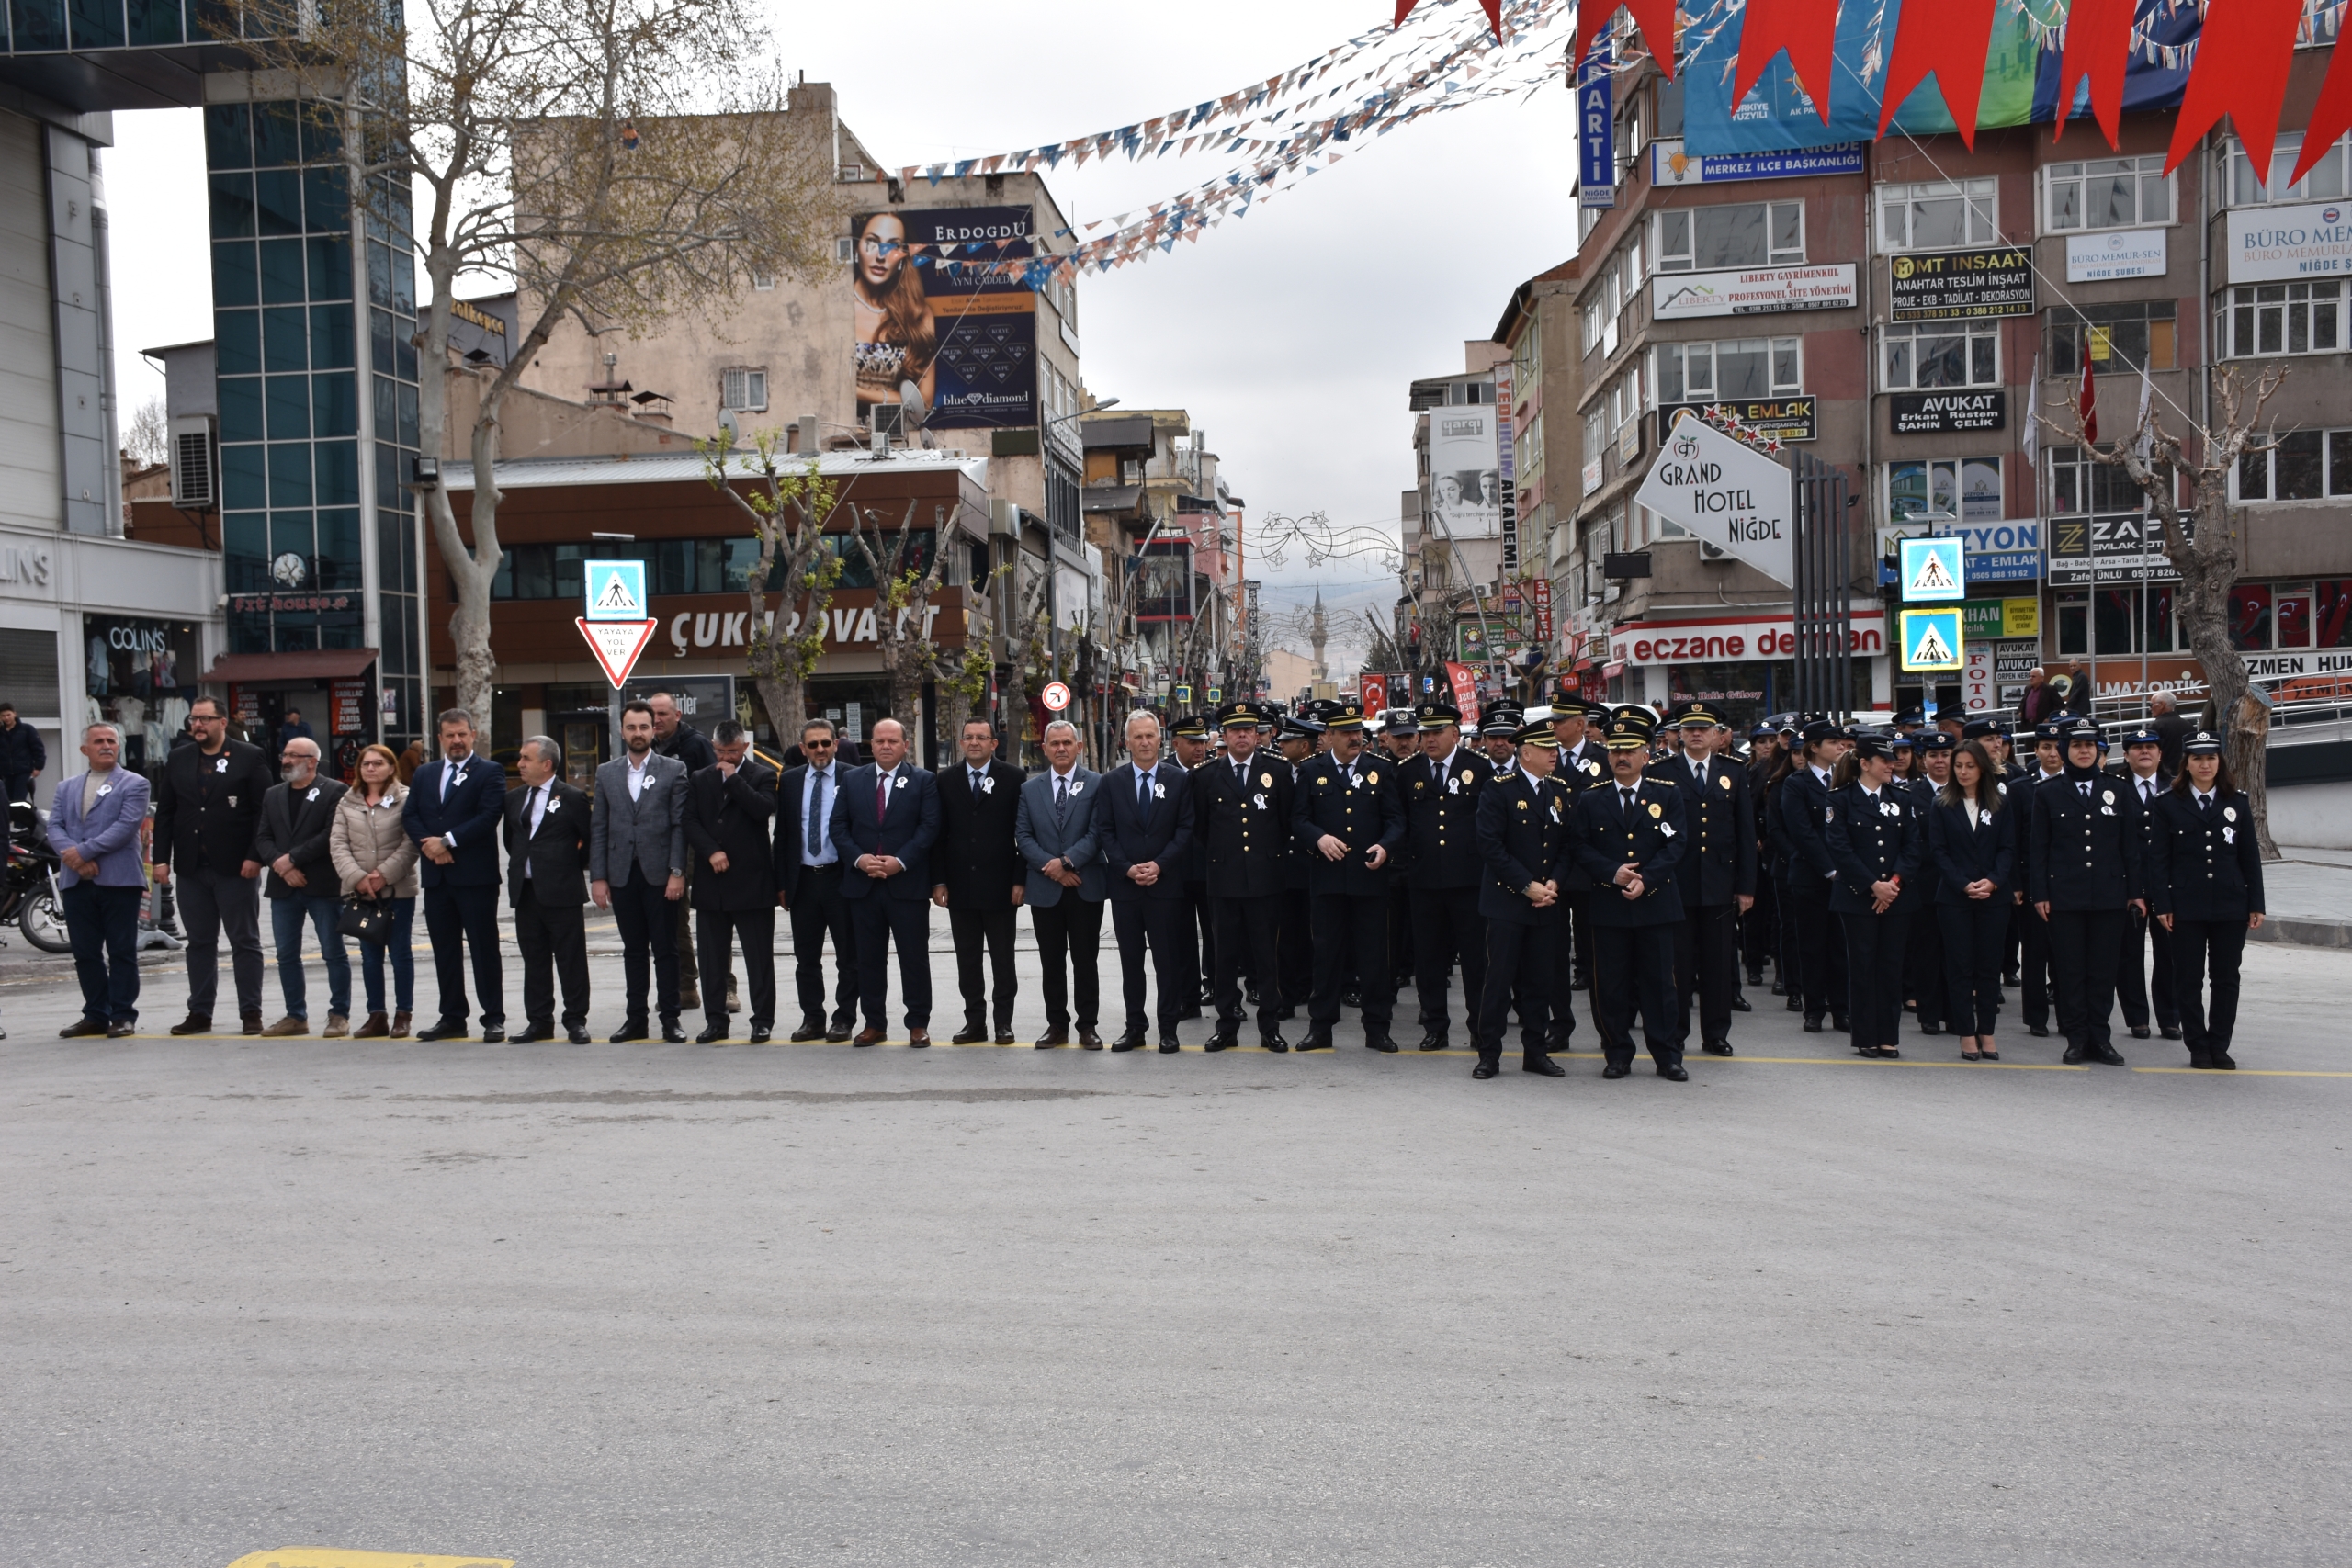 sivas-ve-nigdede-turk-polis-teskilatinin-179-kurulus-yil-donumu-kutlandi-bANZRRDU.jpg